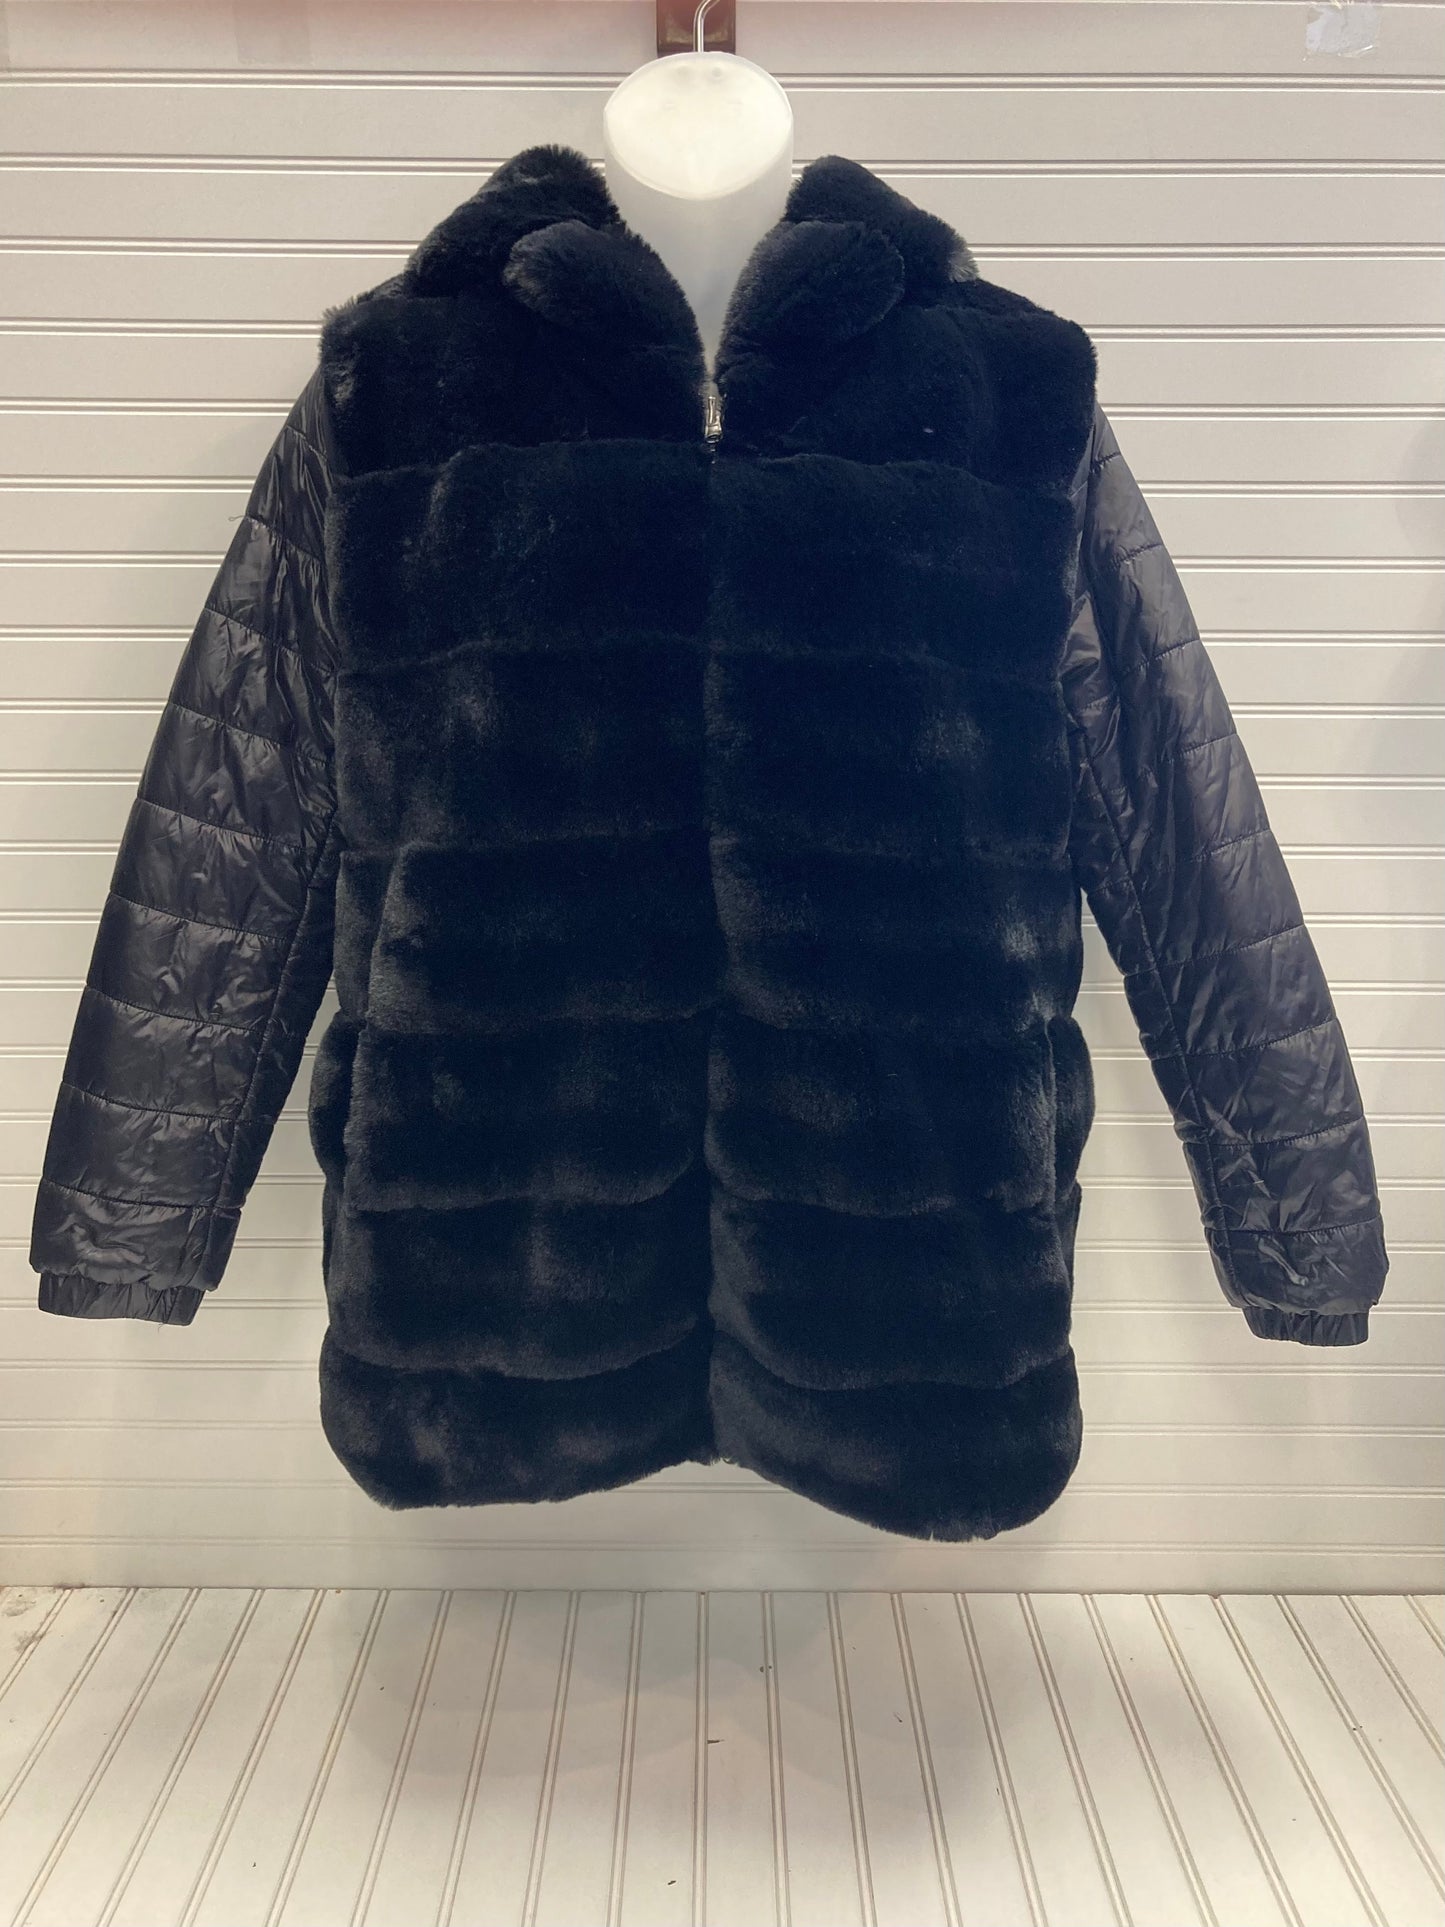 Jacket Faux Fur & Sherpa By Metric Knits  Size: Xl